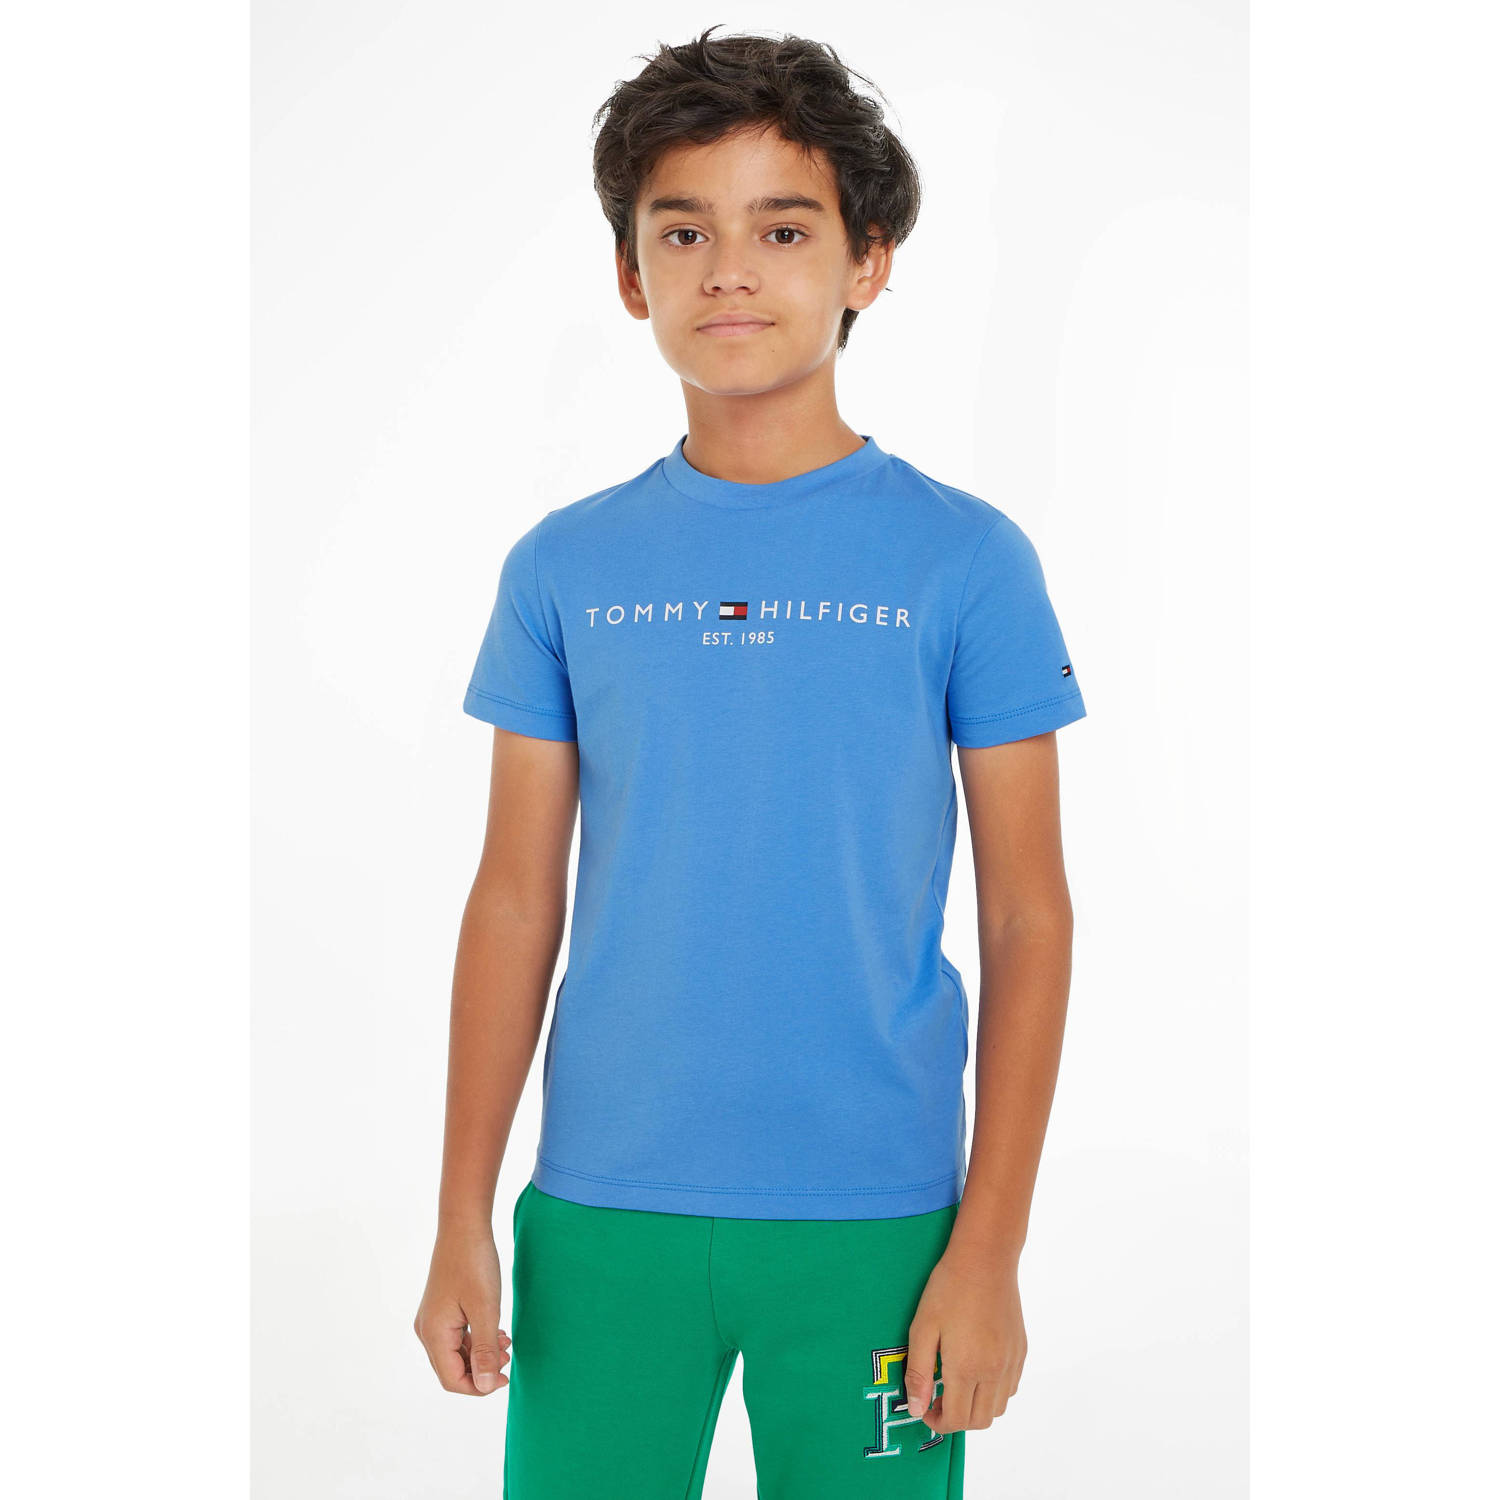 Tommy Hilfiger T-shirt met logo blauw